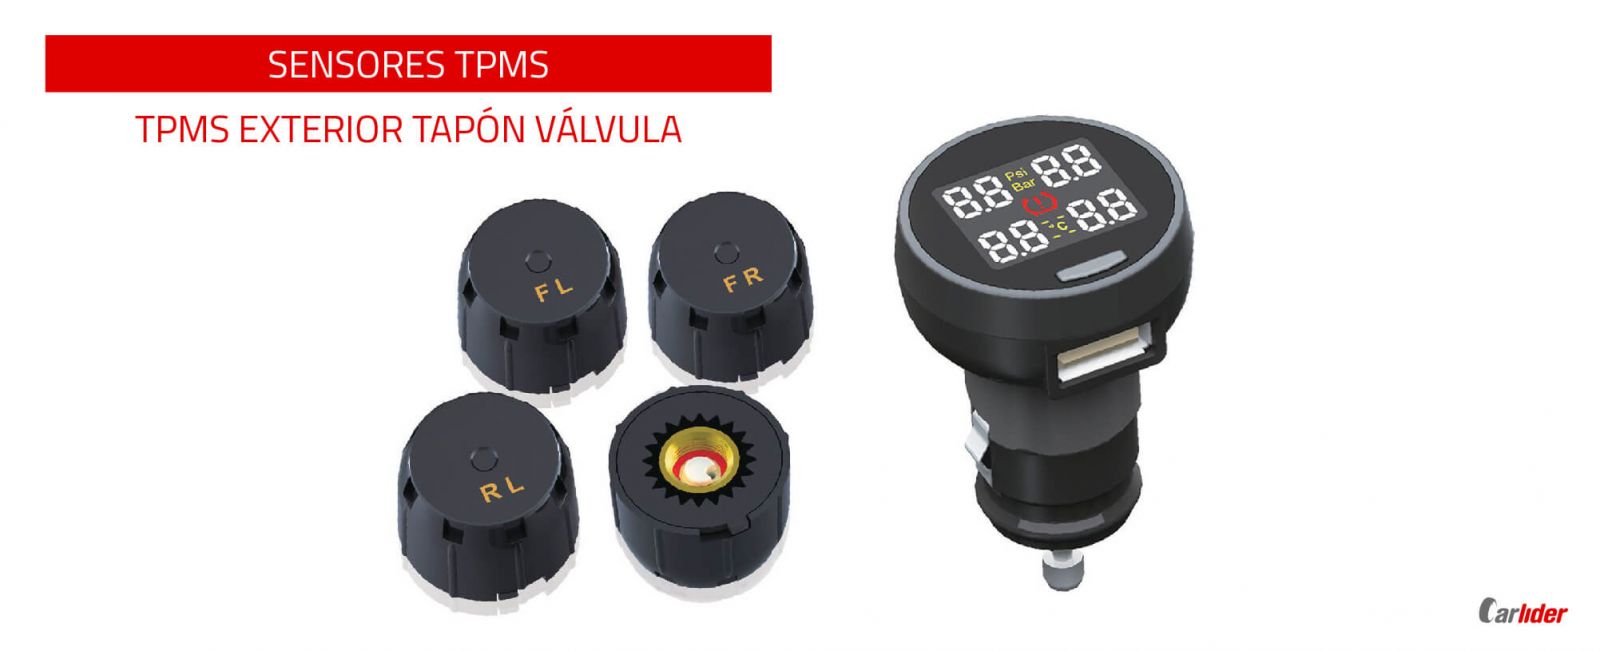 Qué es el sensor de presión de llantas (TPMS)?